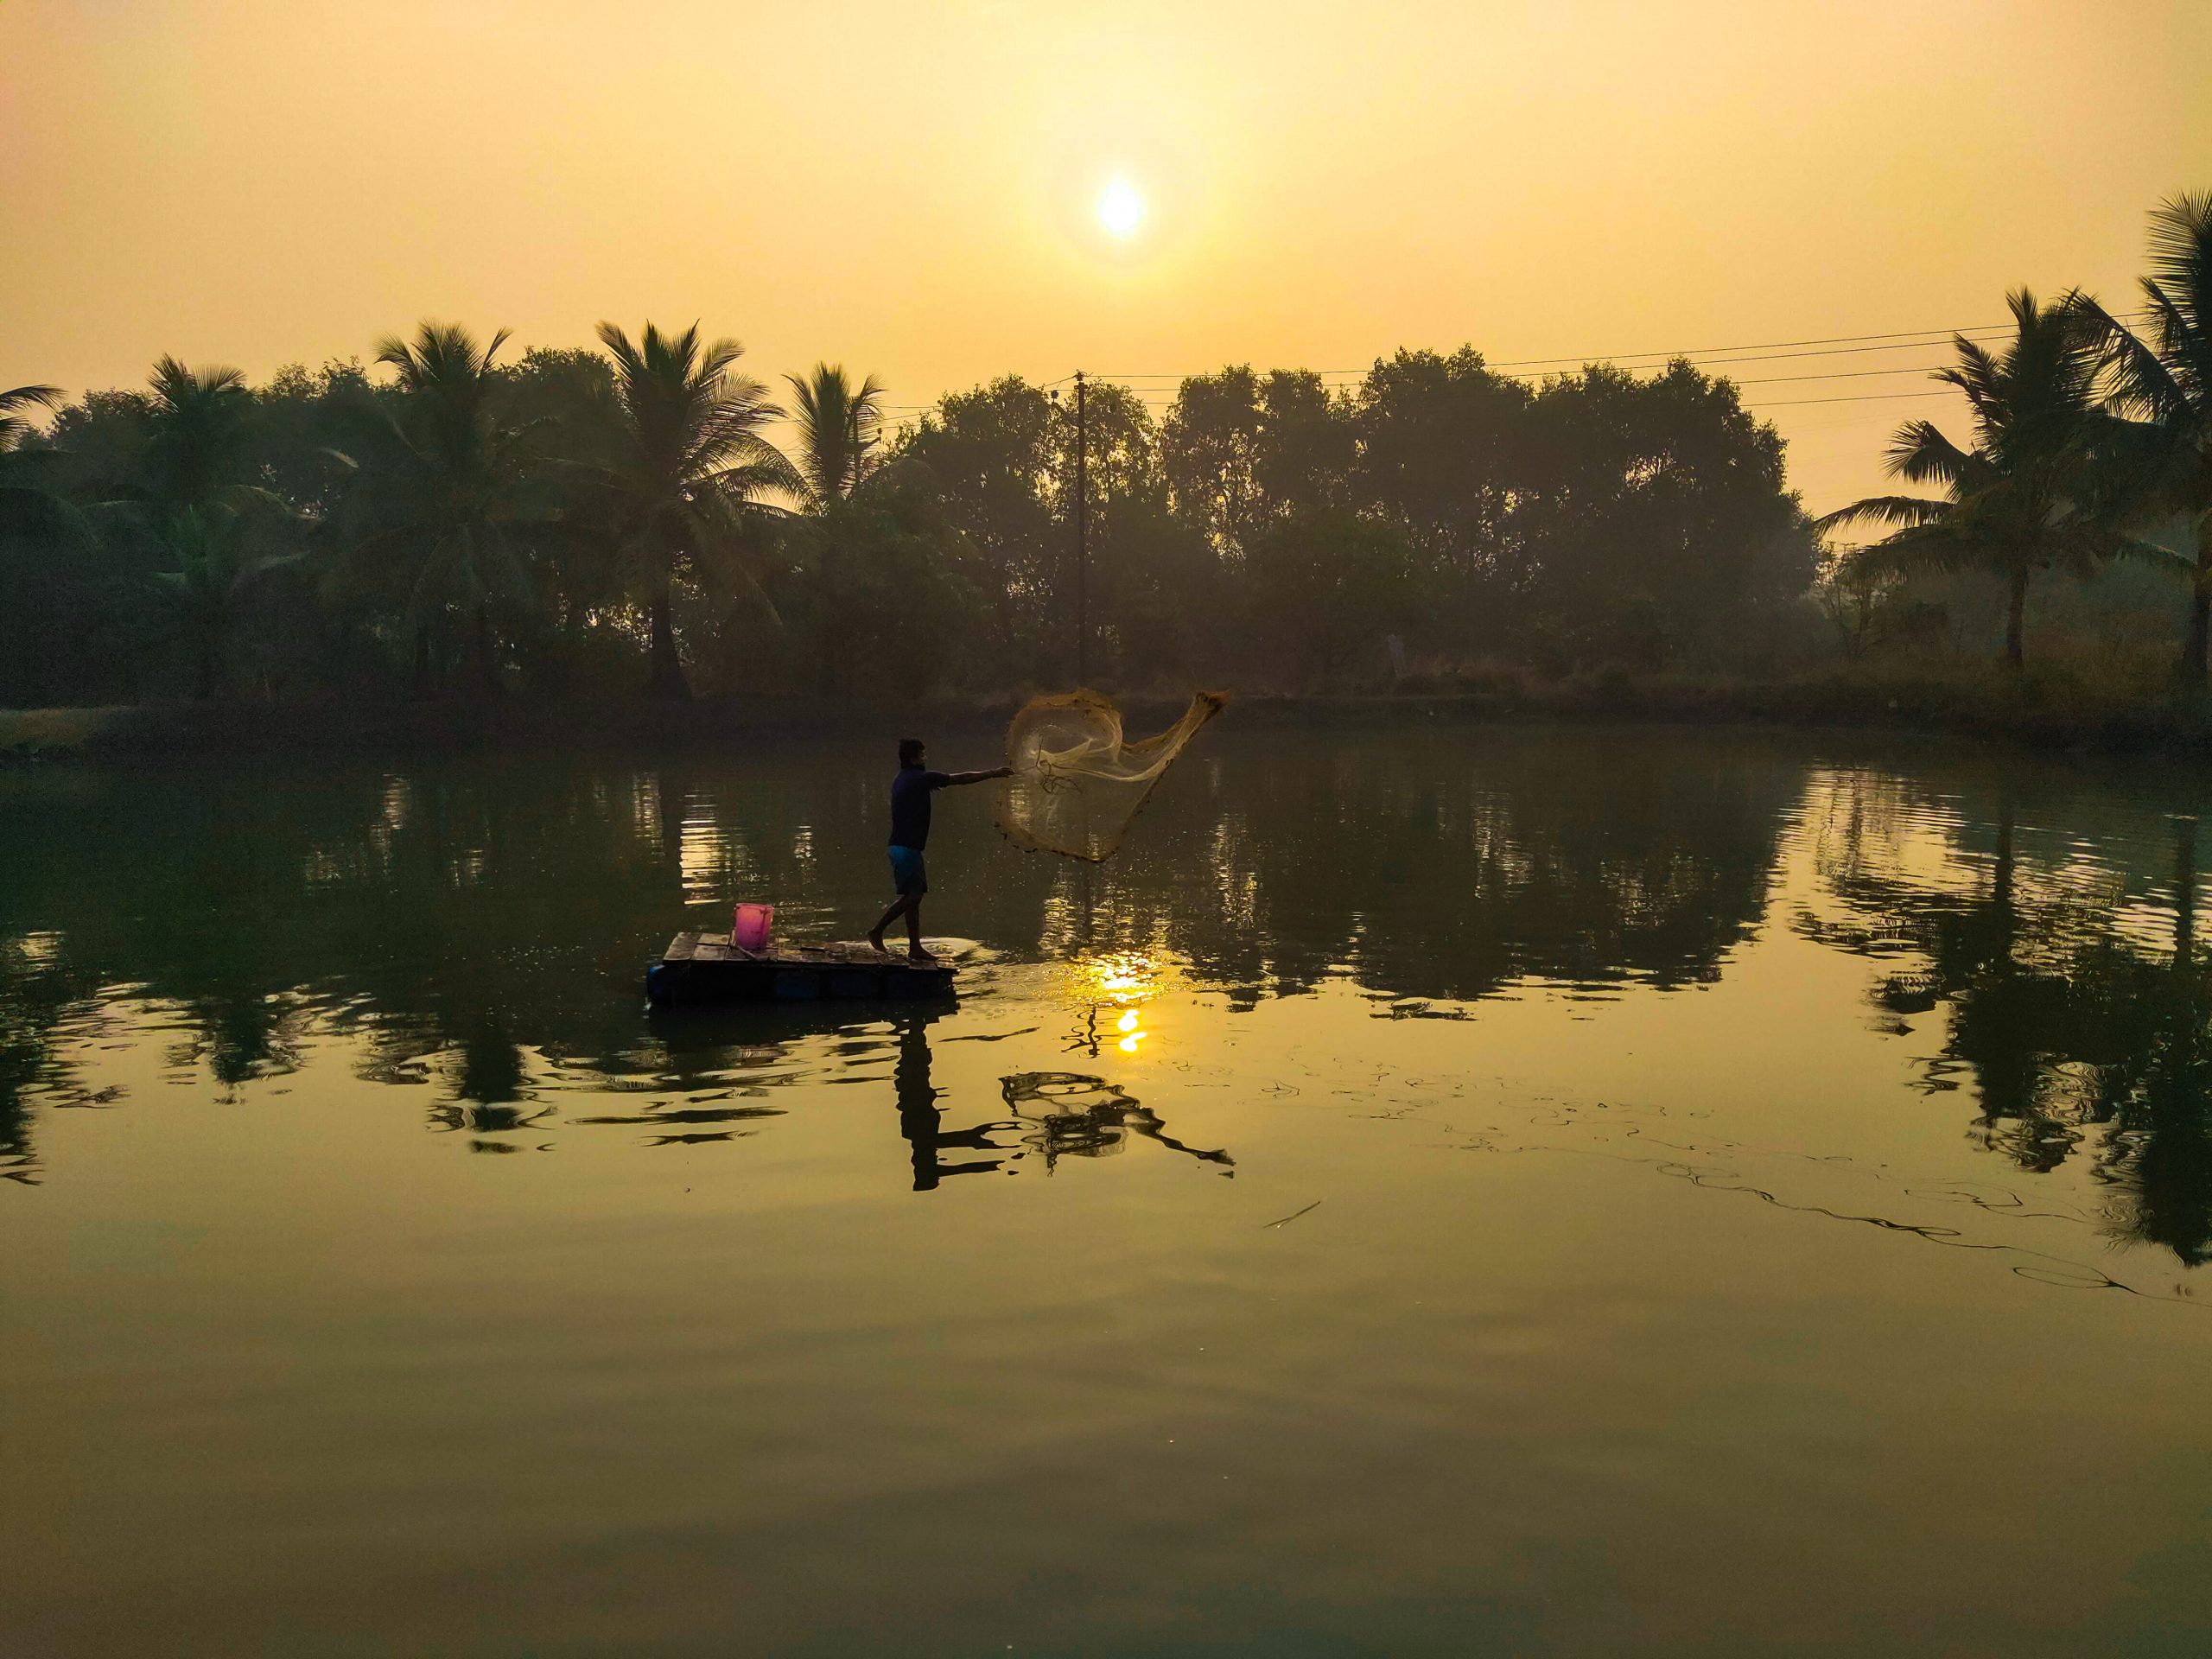 A Man fishing in lake